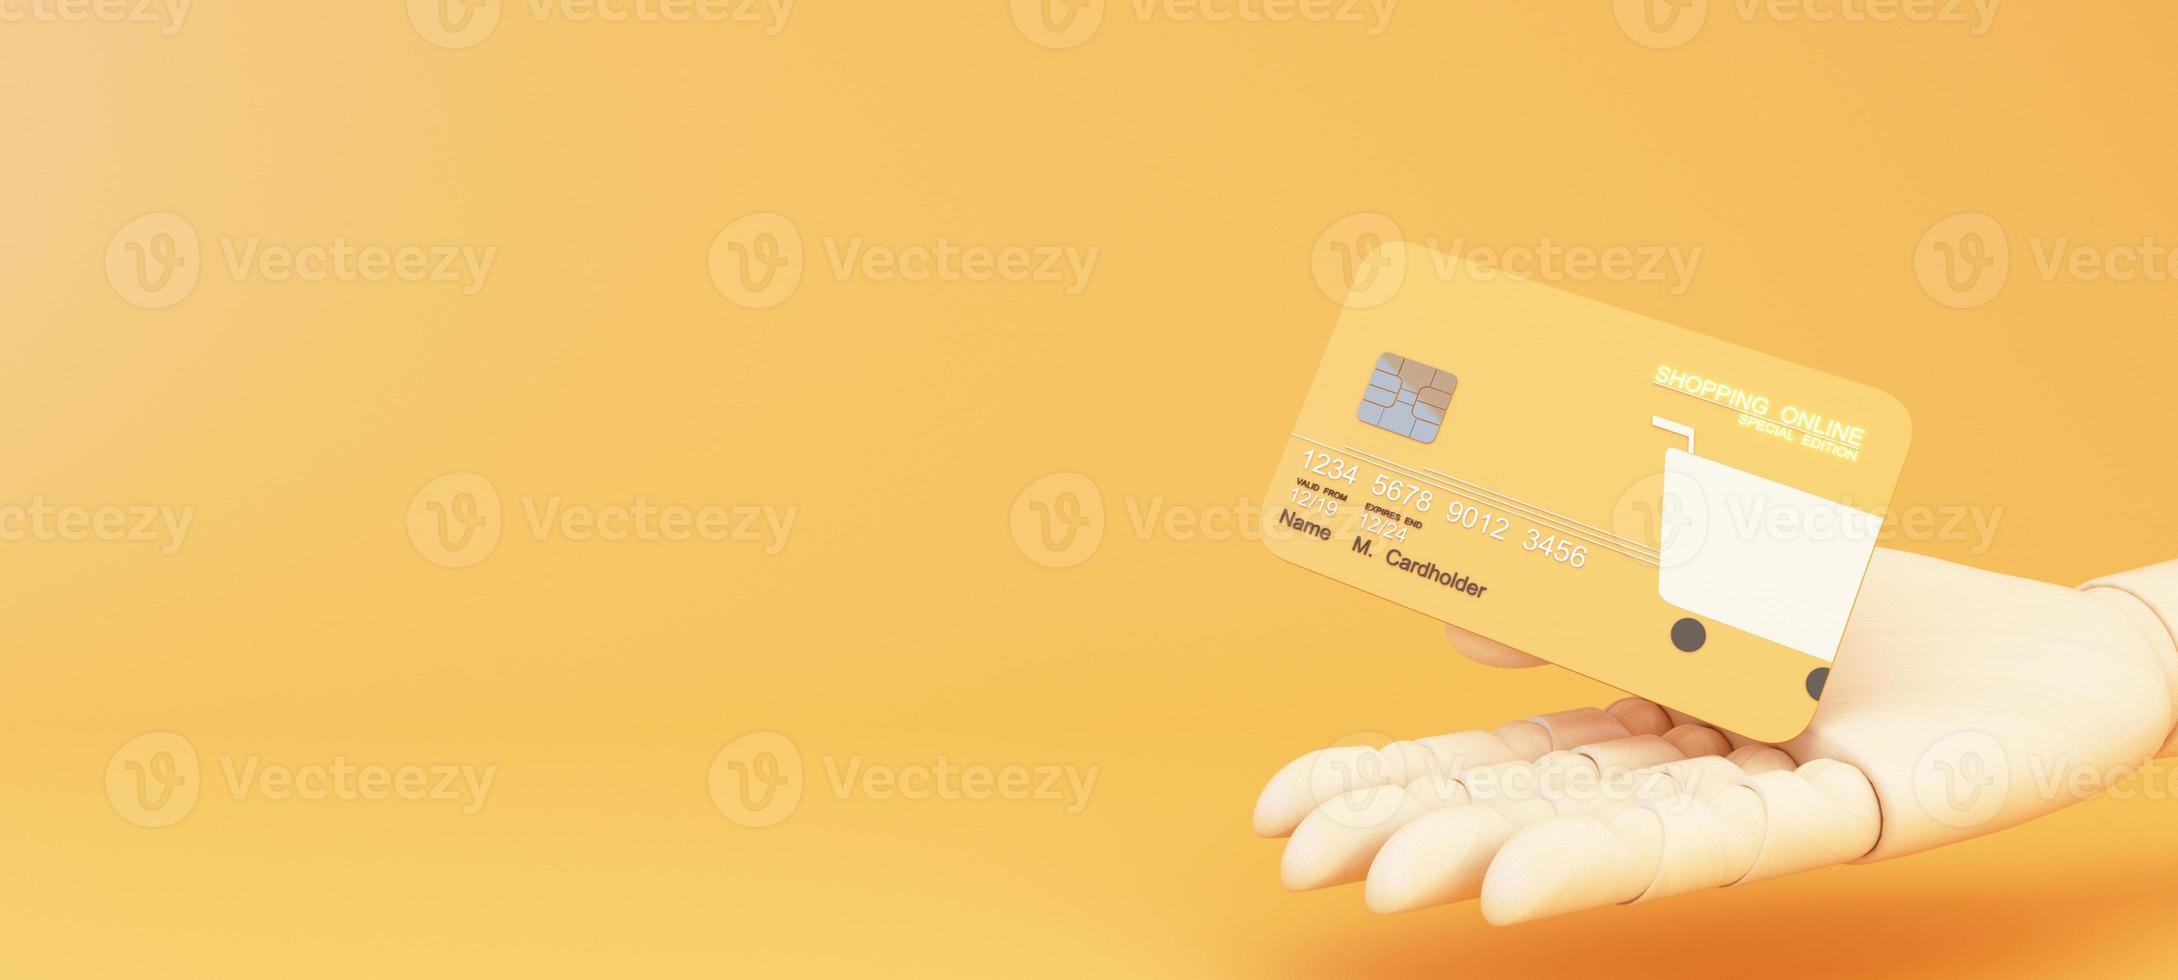 Nahaufnahme von Online-Shopping-Design auf Kreditkarte, schwebende Vorlage Mockup Bank Kreditkarte mit Online-Service isoliert auf rosa Hintergrund, digitale Münze, Brieftasche, Kopierraum 3D-Rendering foto